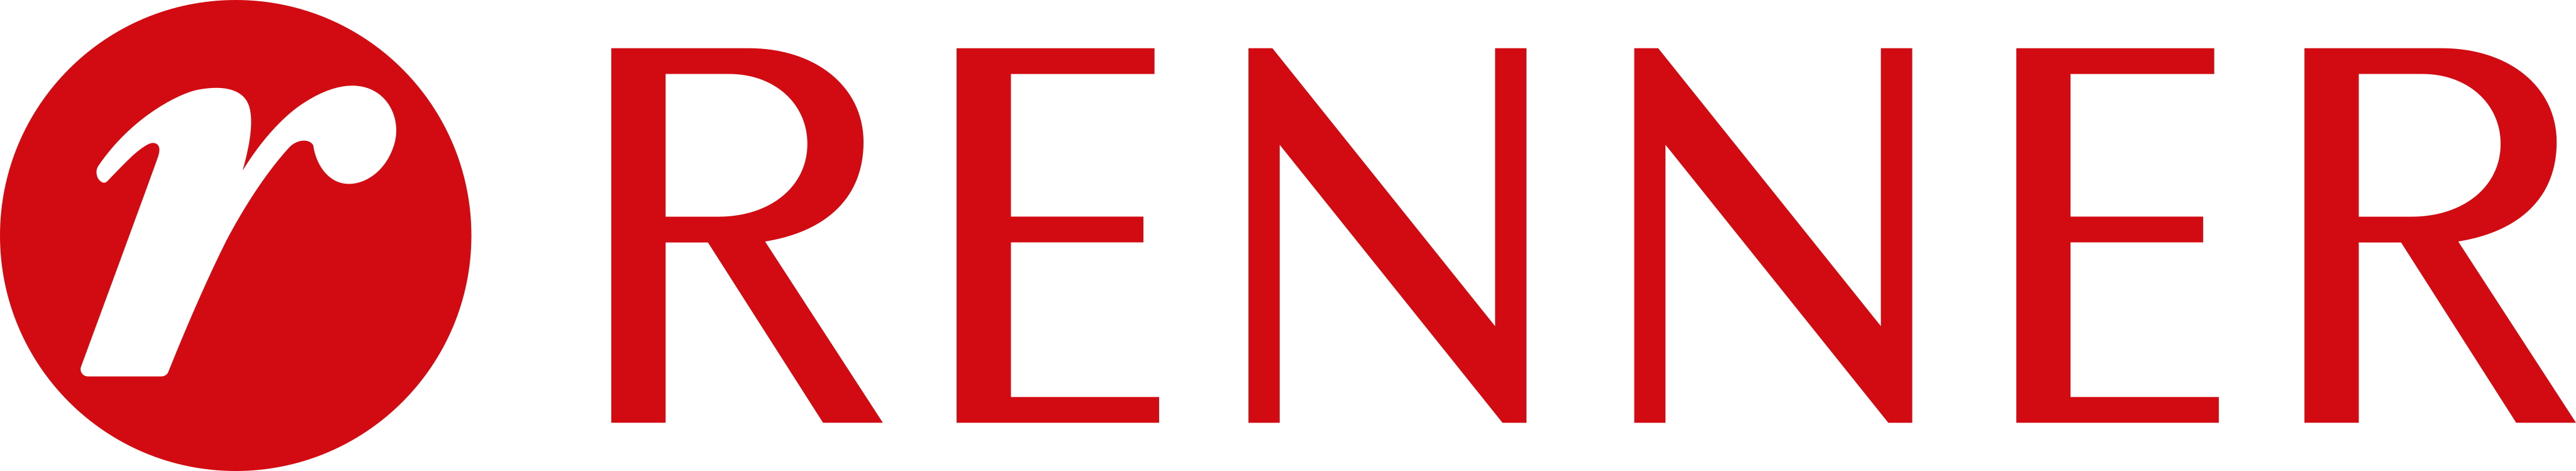 renner-logo-1-1